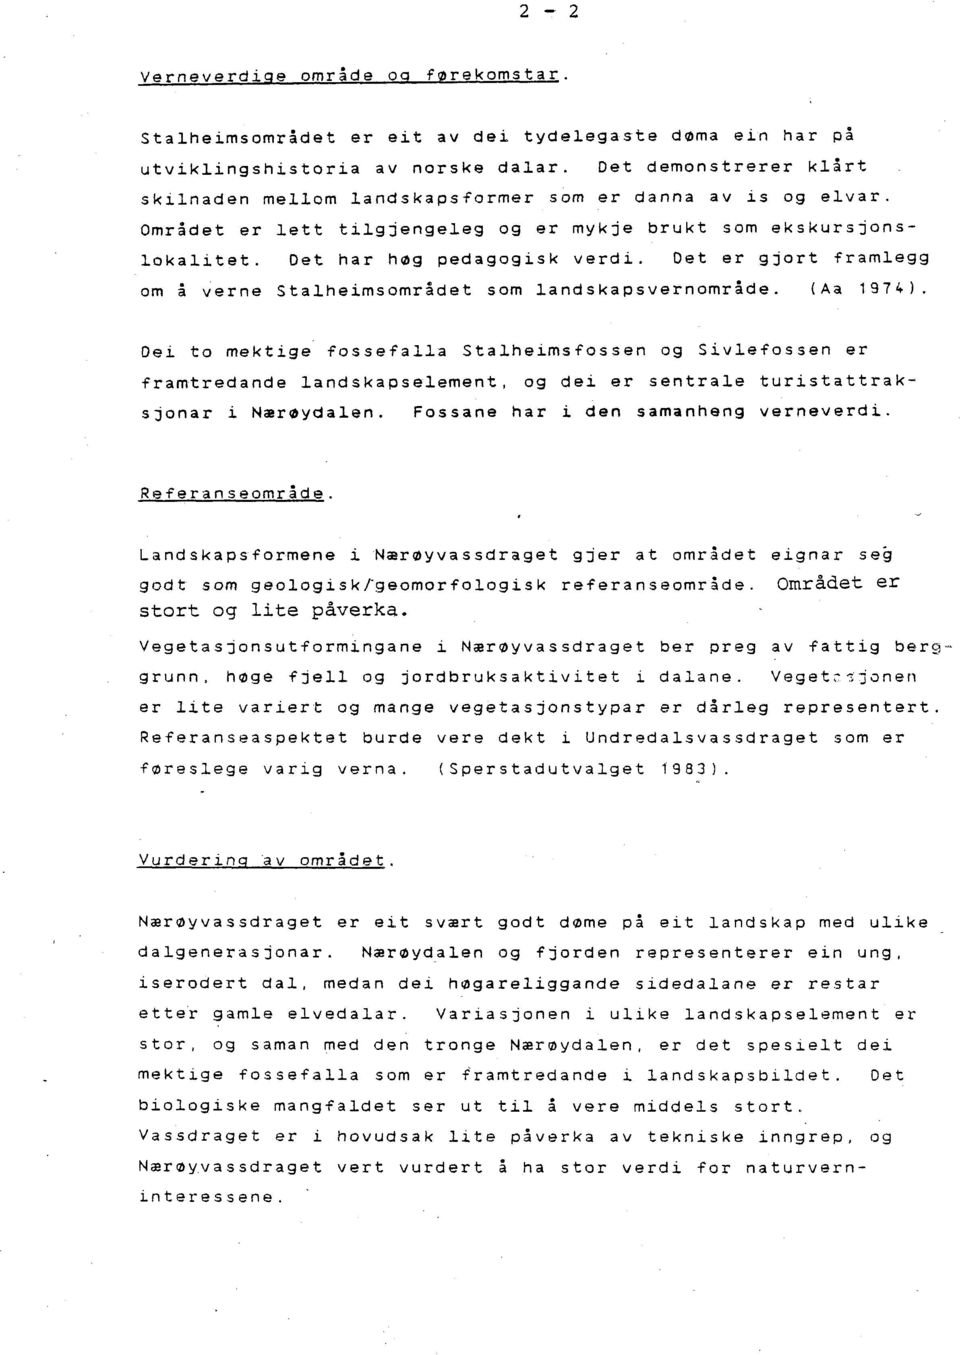 Det er gjort framlegg om å verne Stalheimsområdet som landskapsvernområde. (Aa 1974).